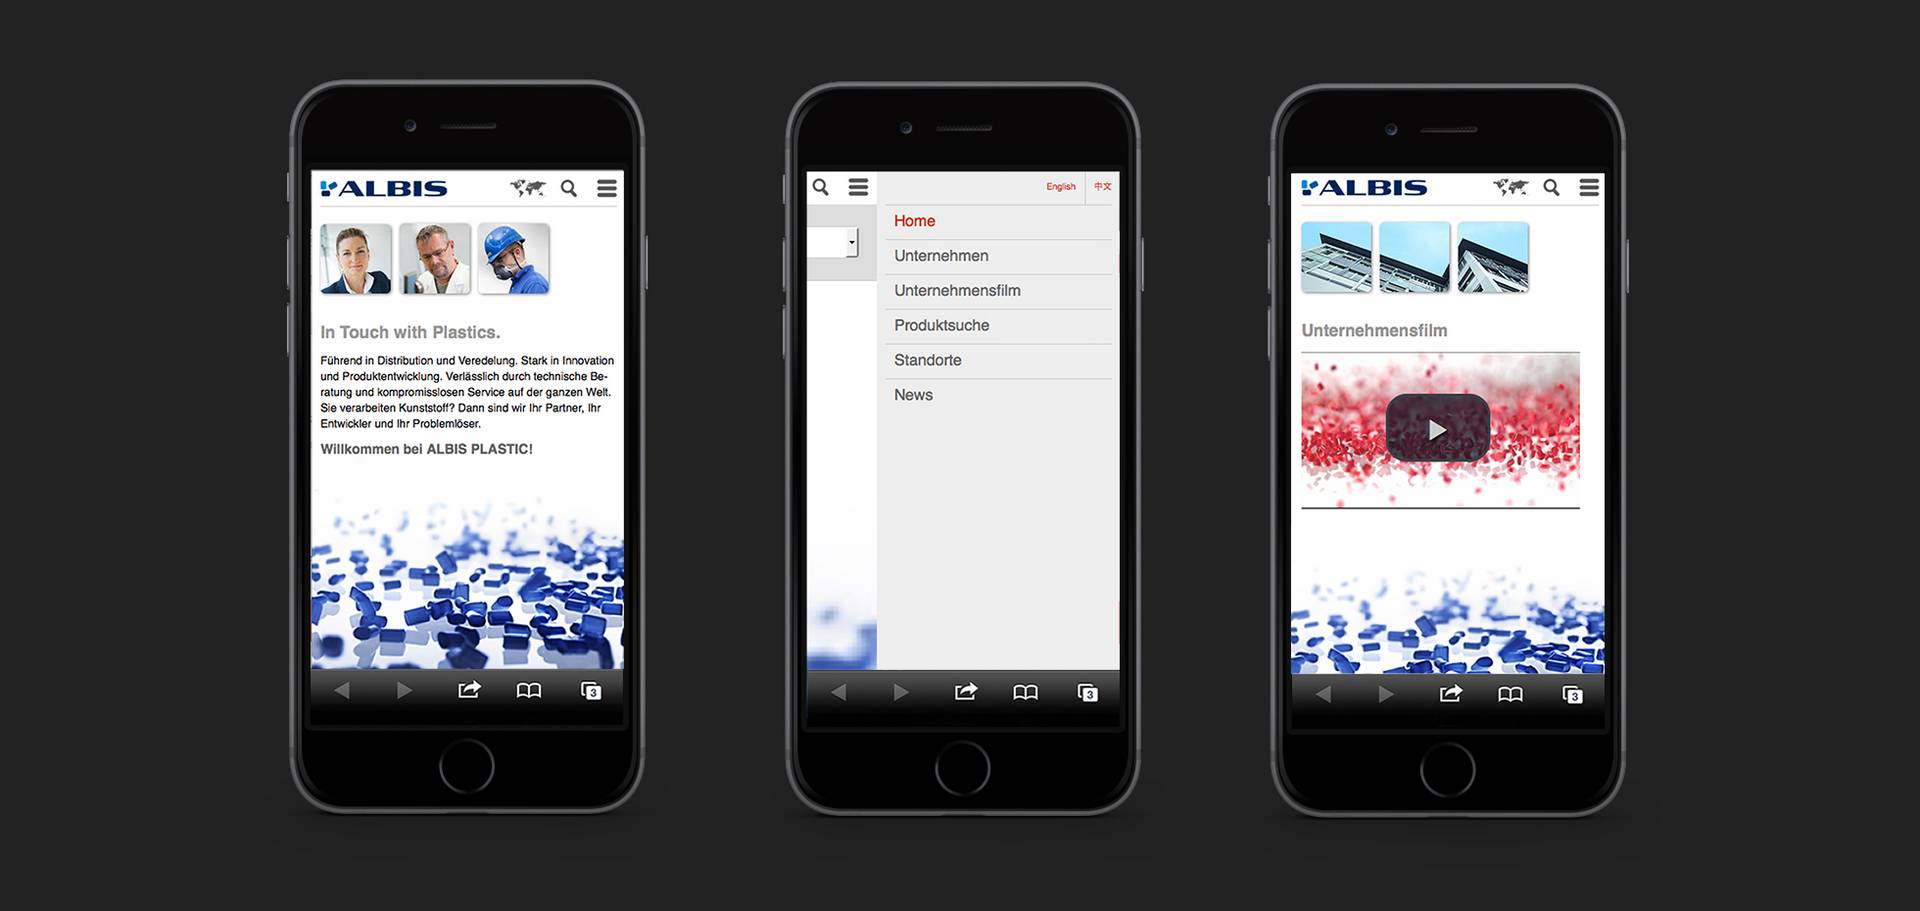 Präsentation der ALBIS Plastic Website auf drei iPhones